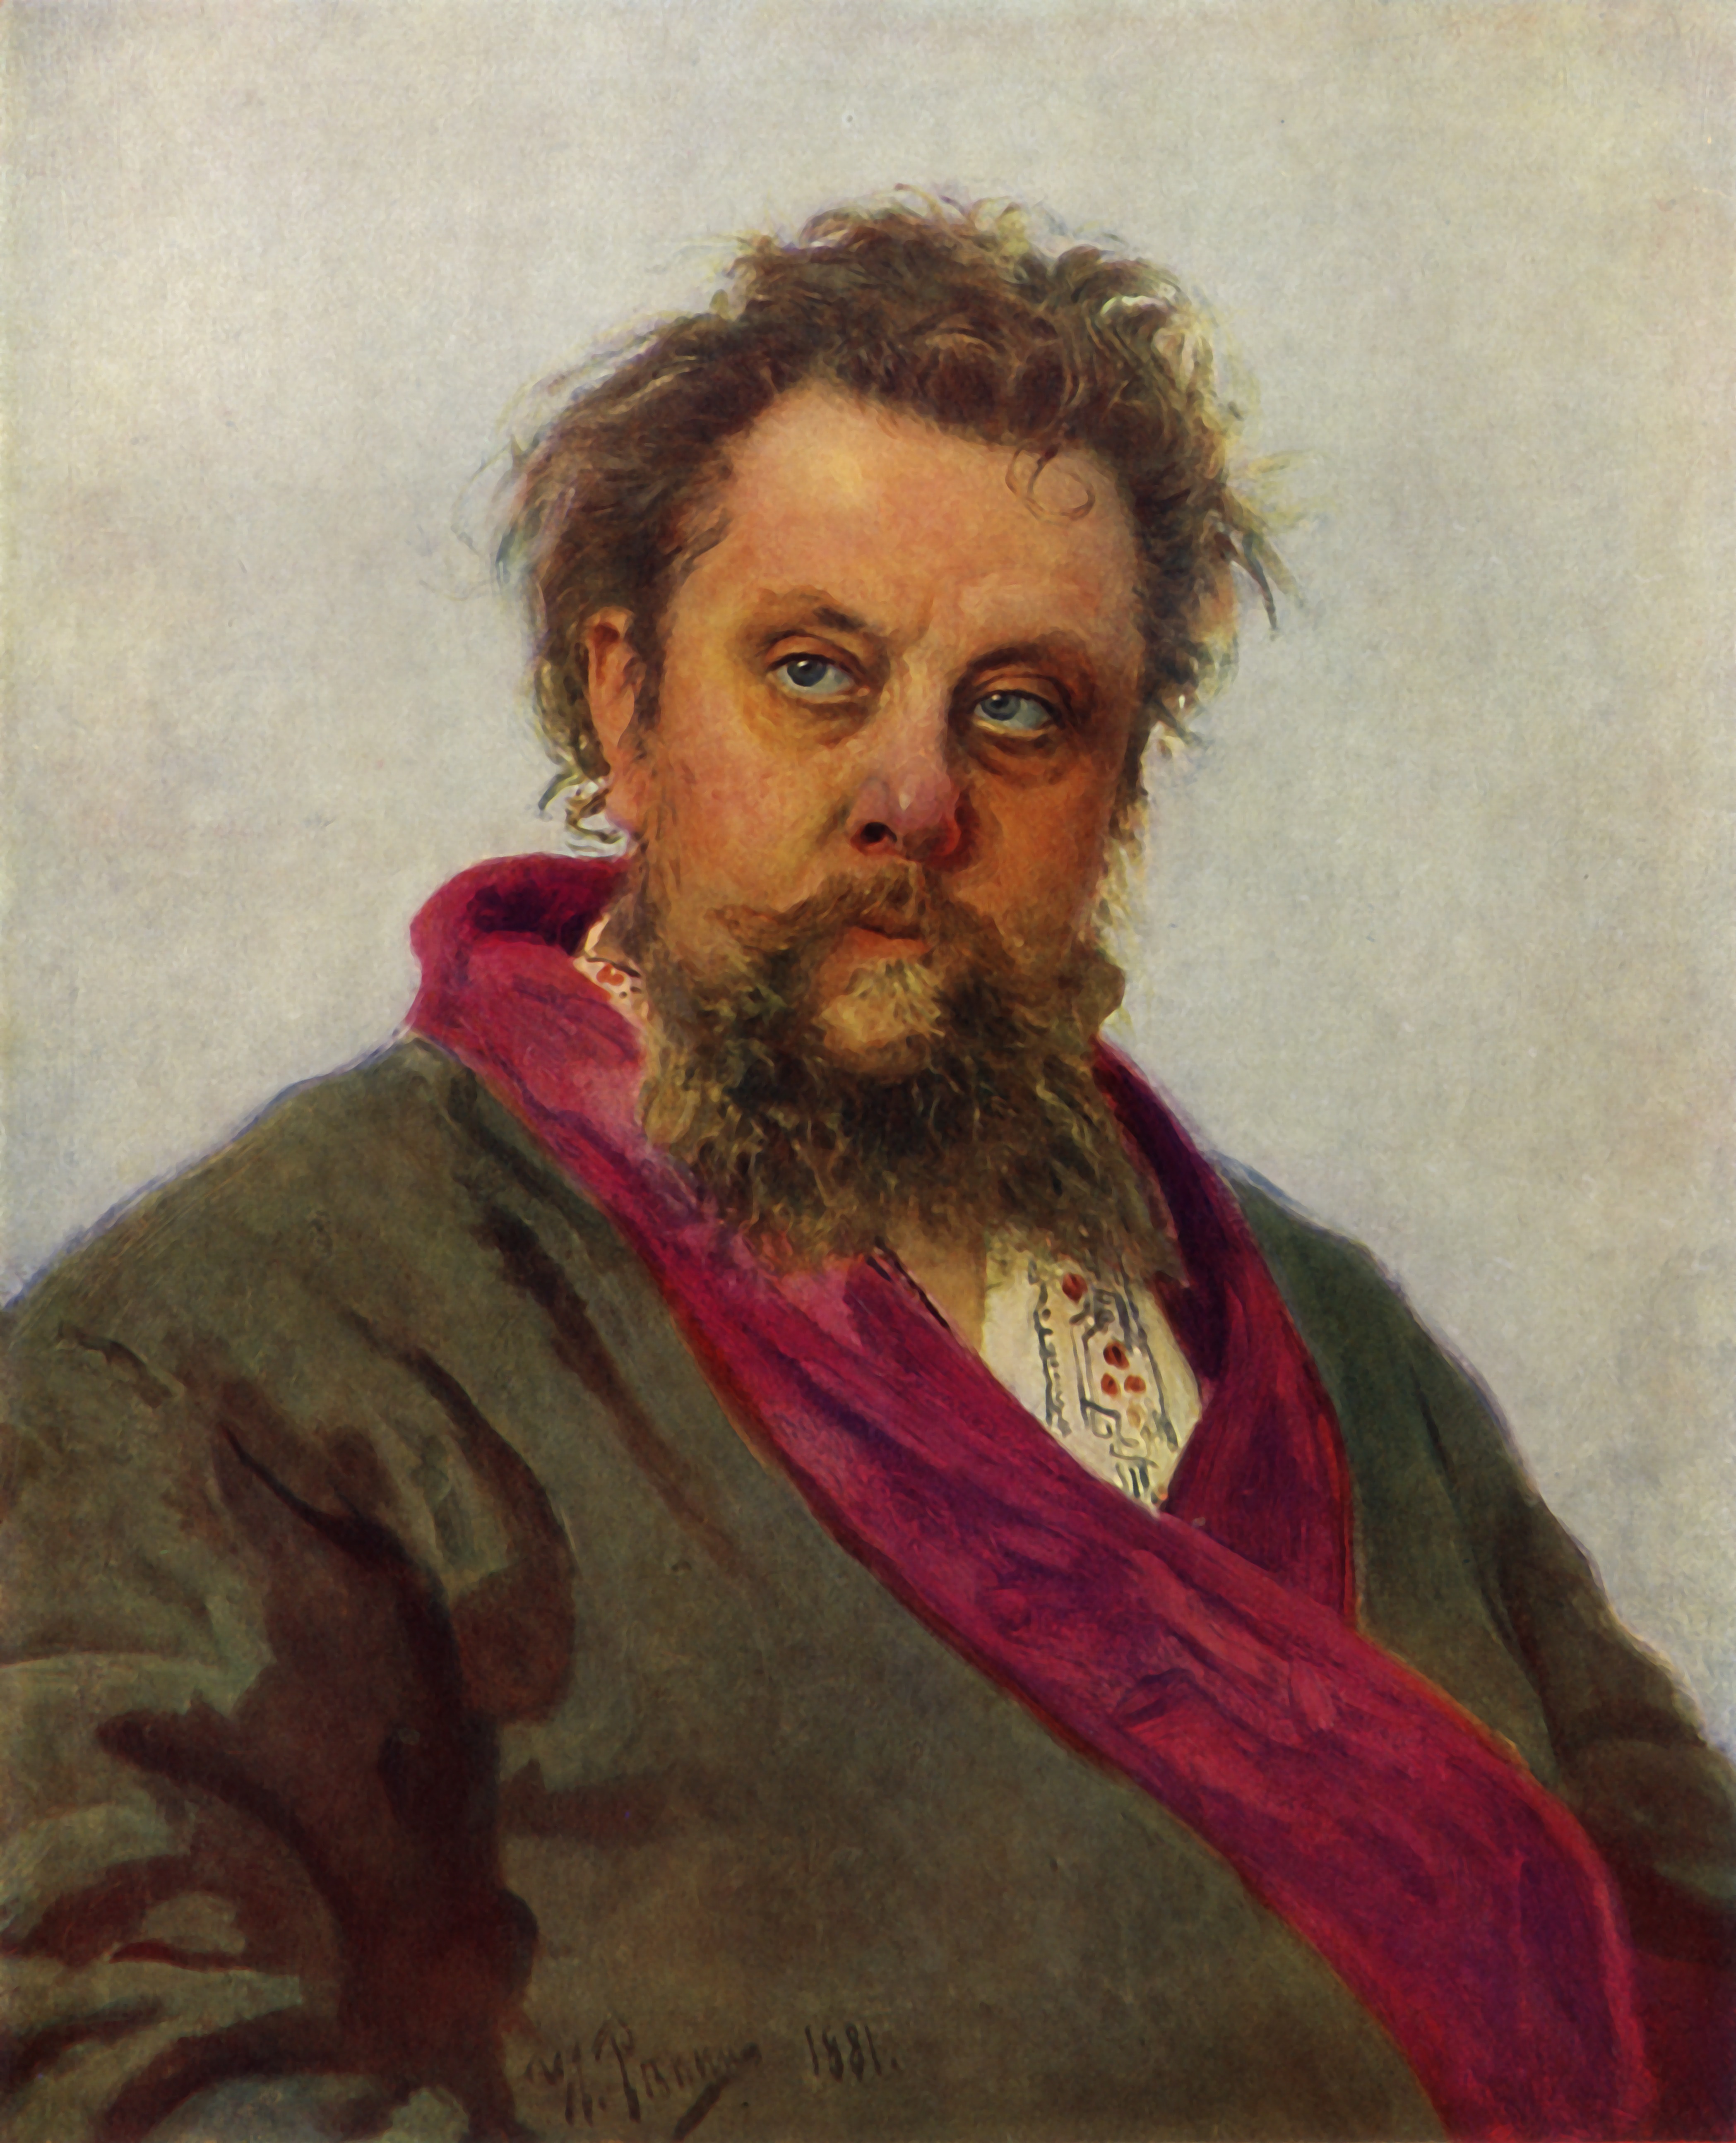 Ritratto di Modest Musorgskij nell’anno della sua morte, 1881. Artista: Il'ya Repin. Mosca, State Tretyakov Gallery.